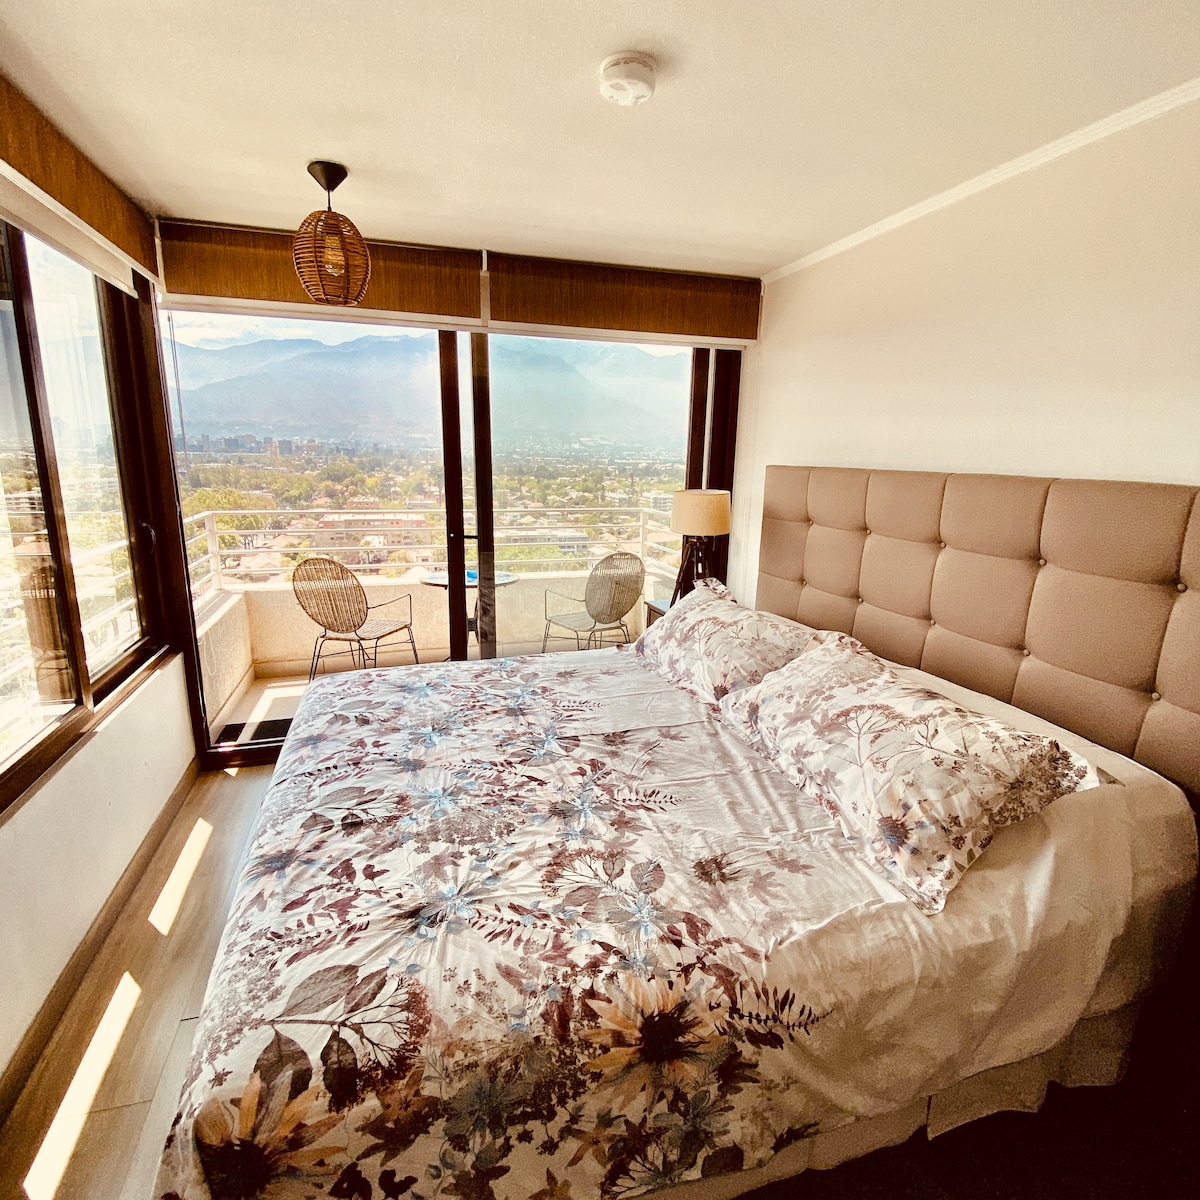 安第斯最美丽景观的家庭STGO休息室顶层公寓